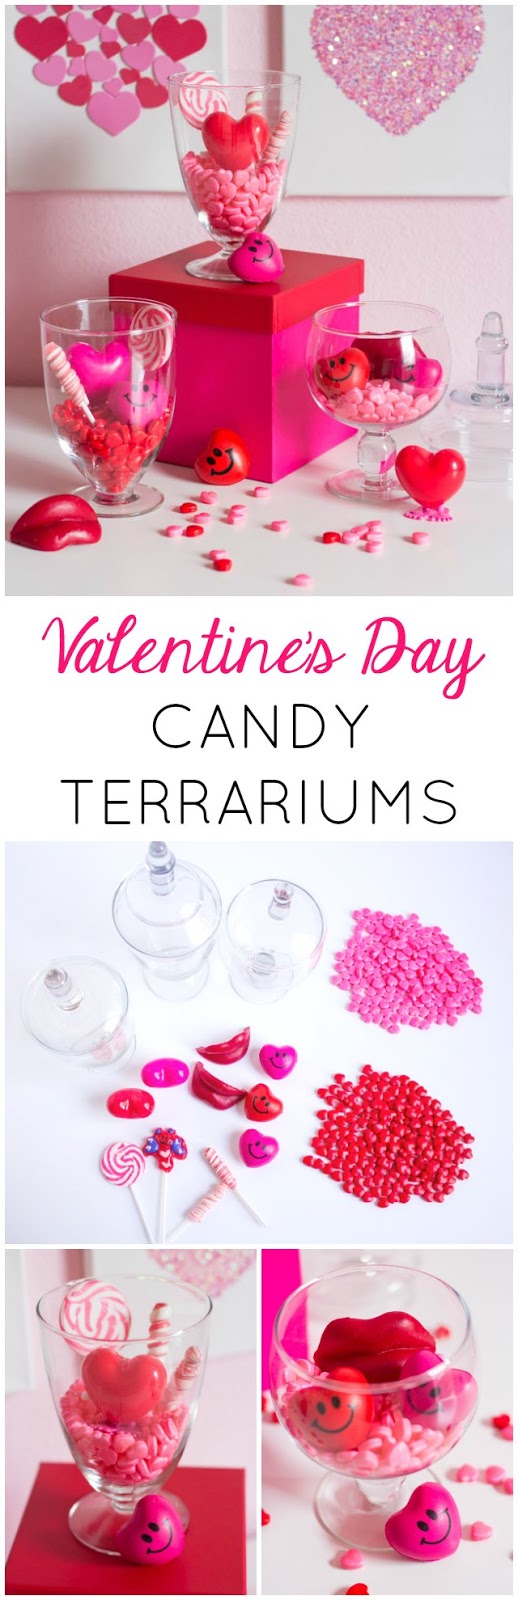 Valentine's Day Candy Terrariums Tutorial